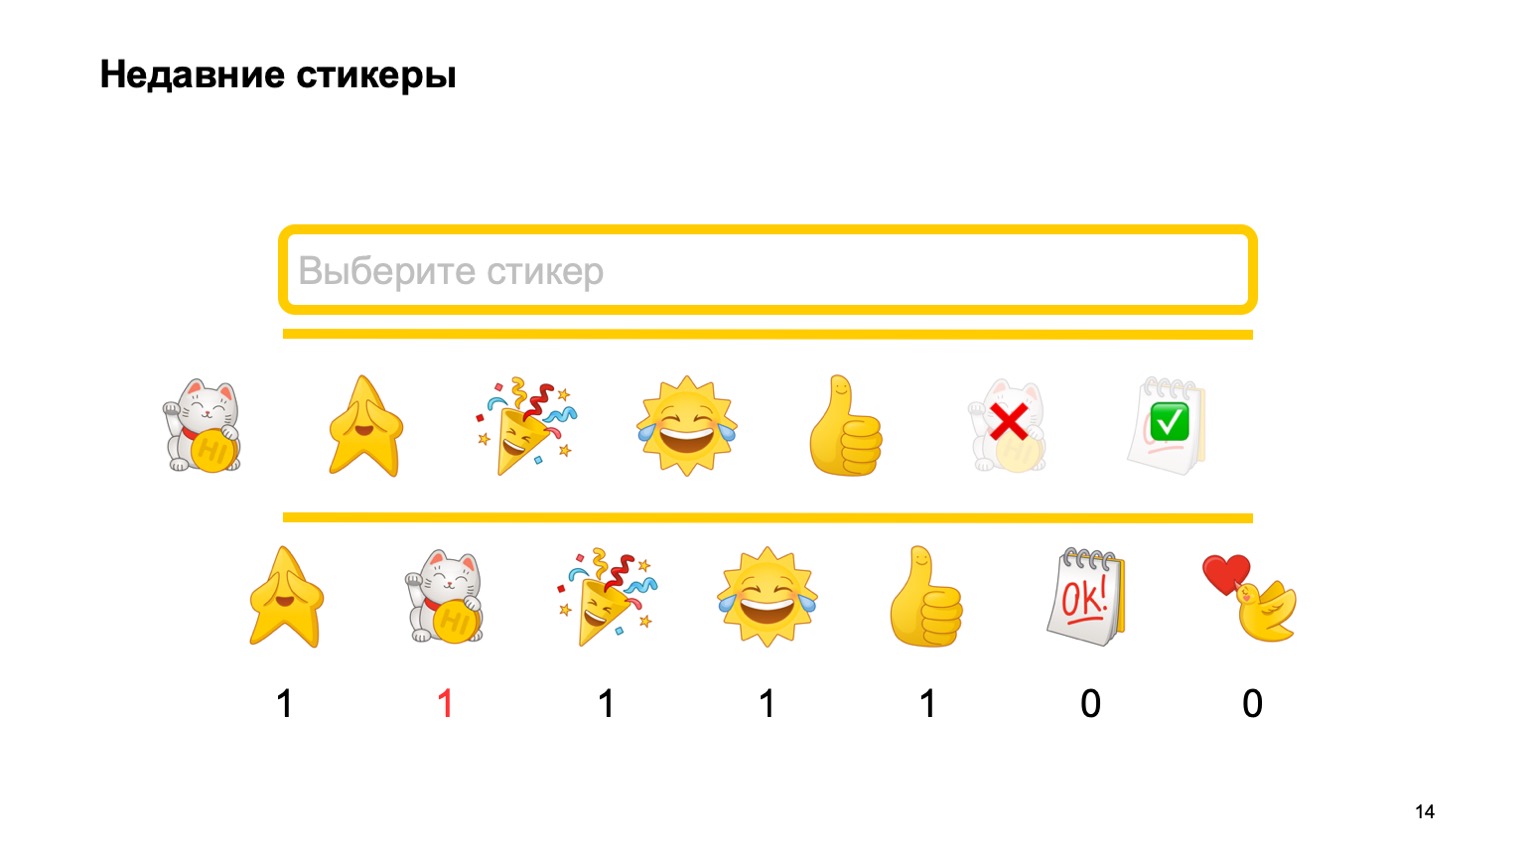 Мобильная разработка — это просто и скучно? Доклад Яндекса - 13